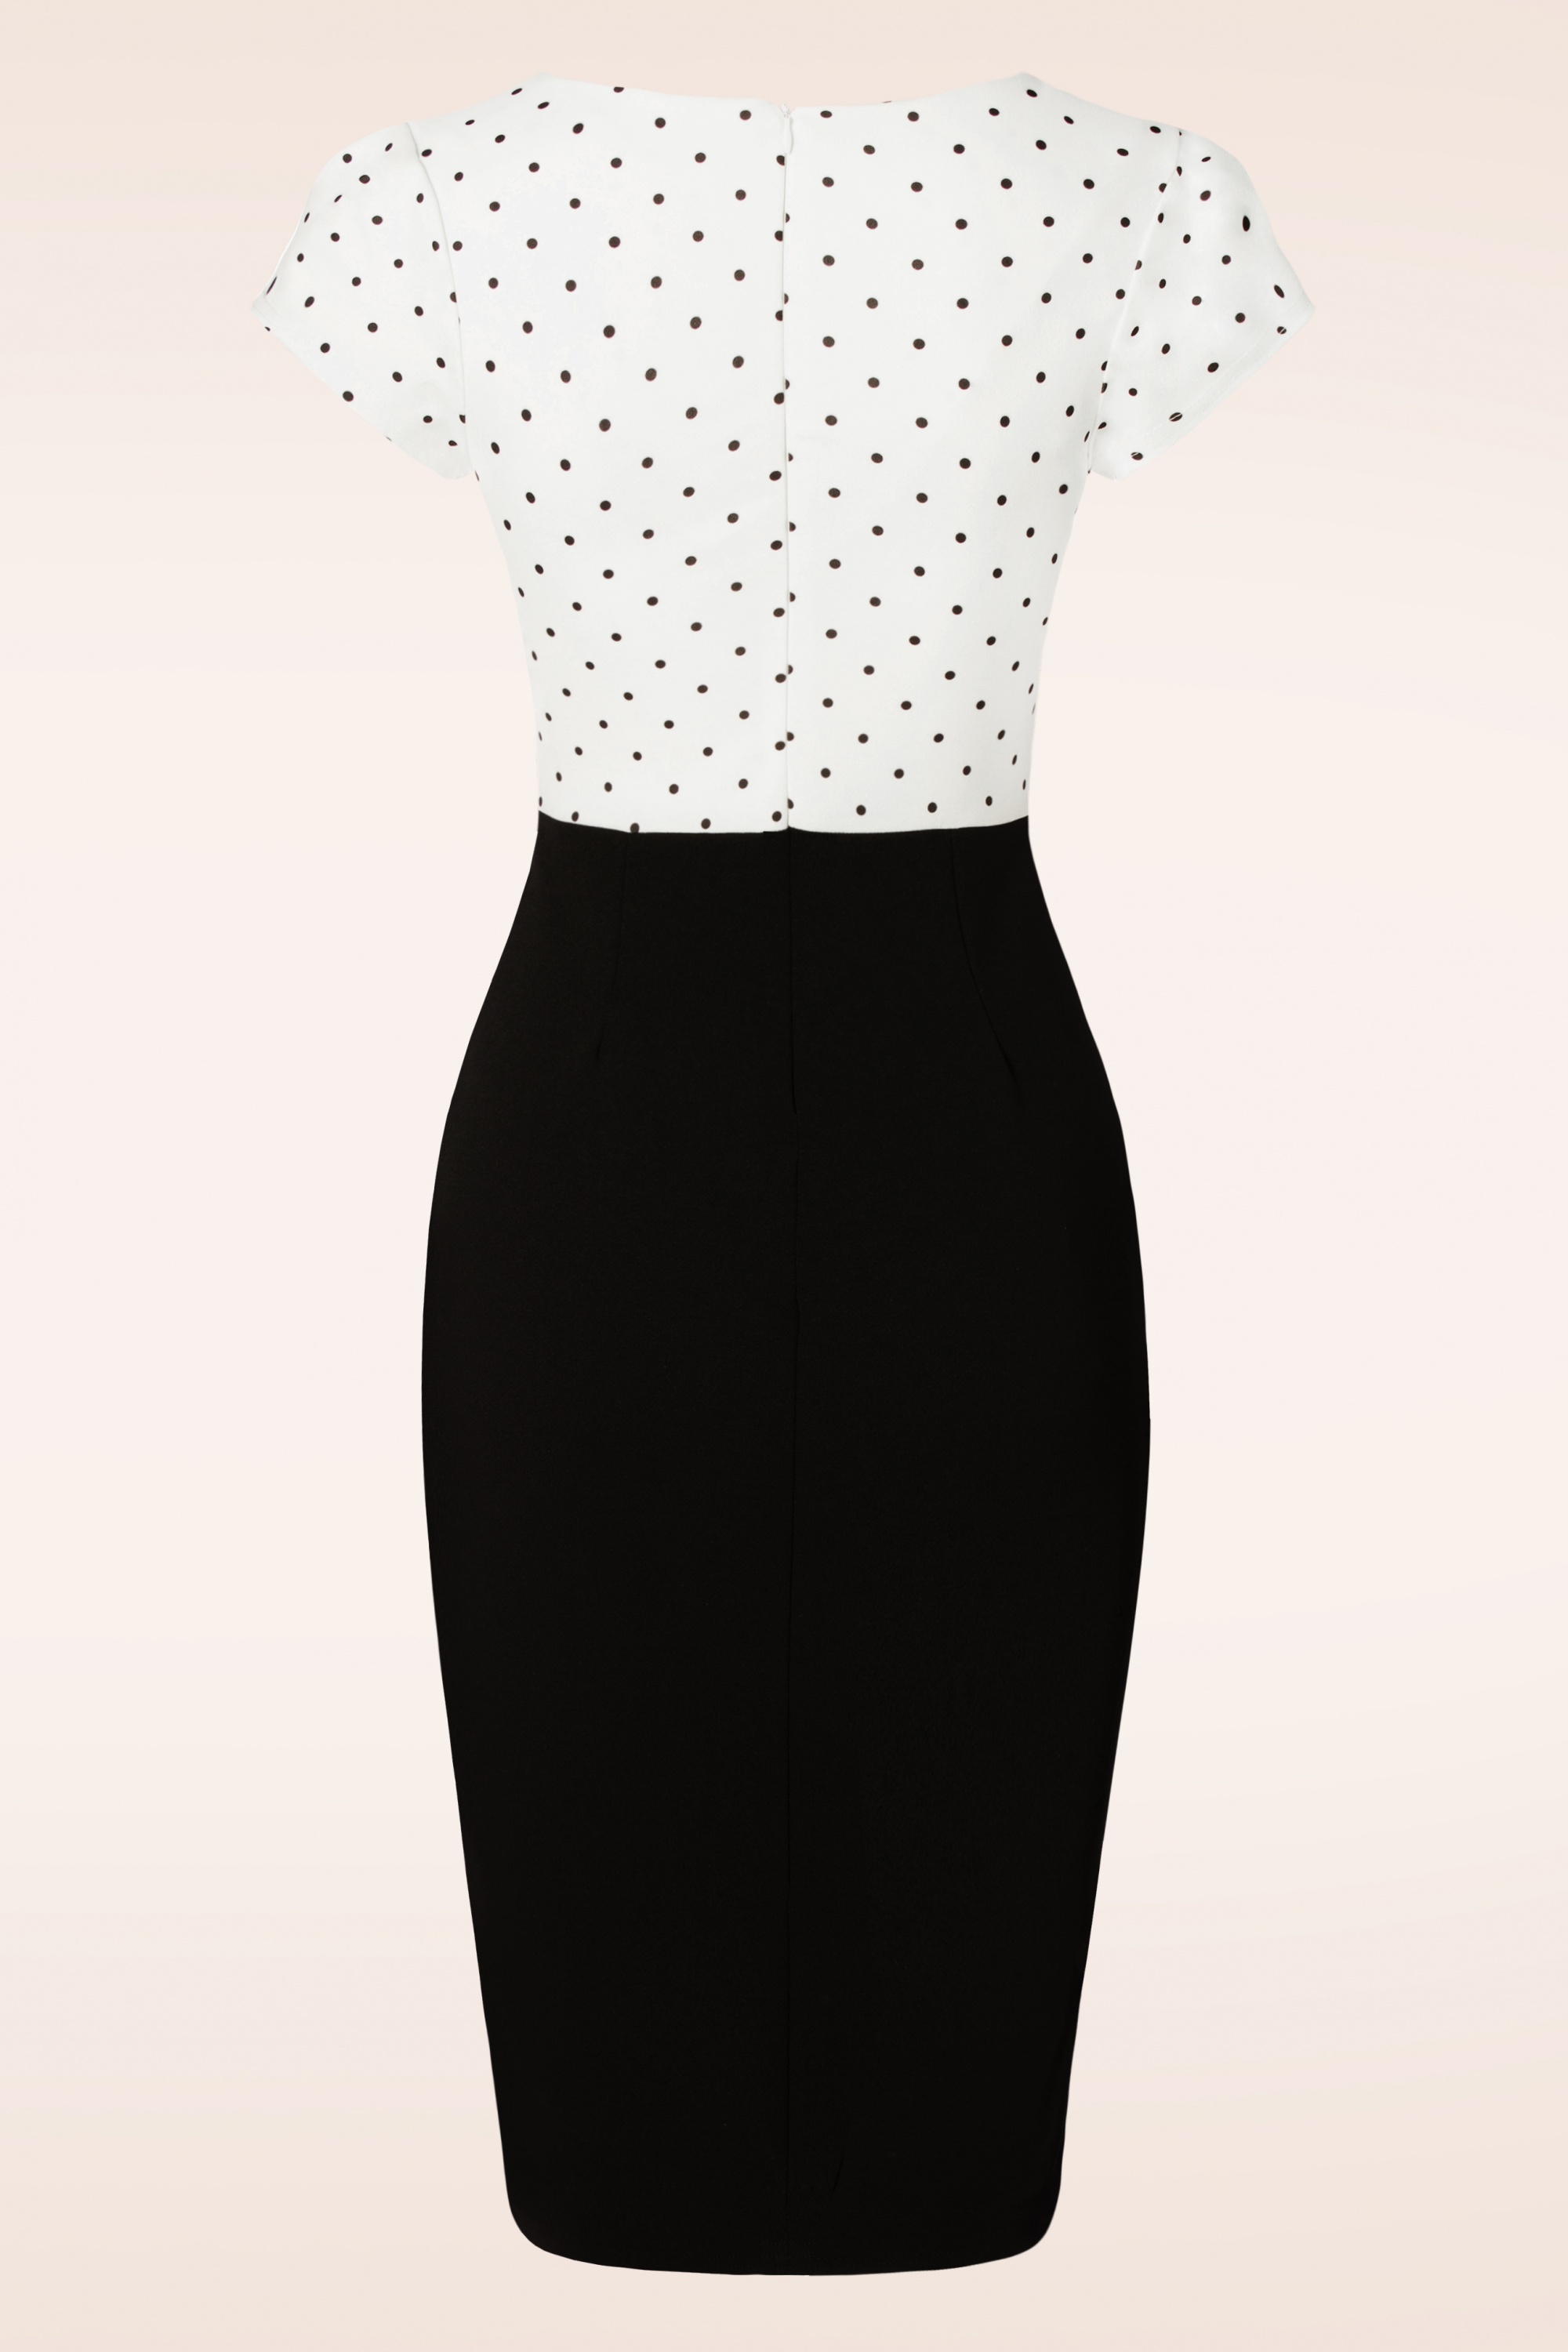 Vintage Chic for Topvintage - Elise jurk in zwart en wit 2